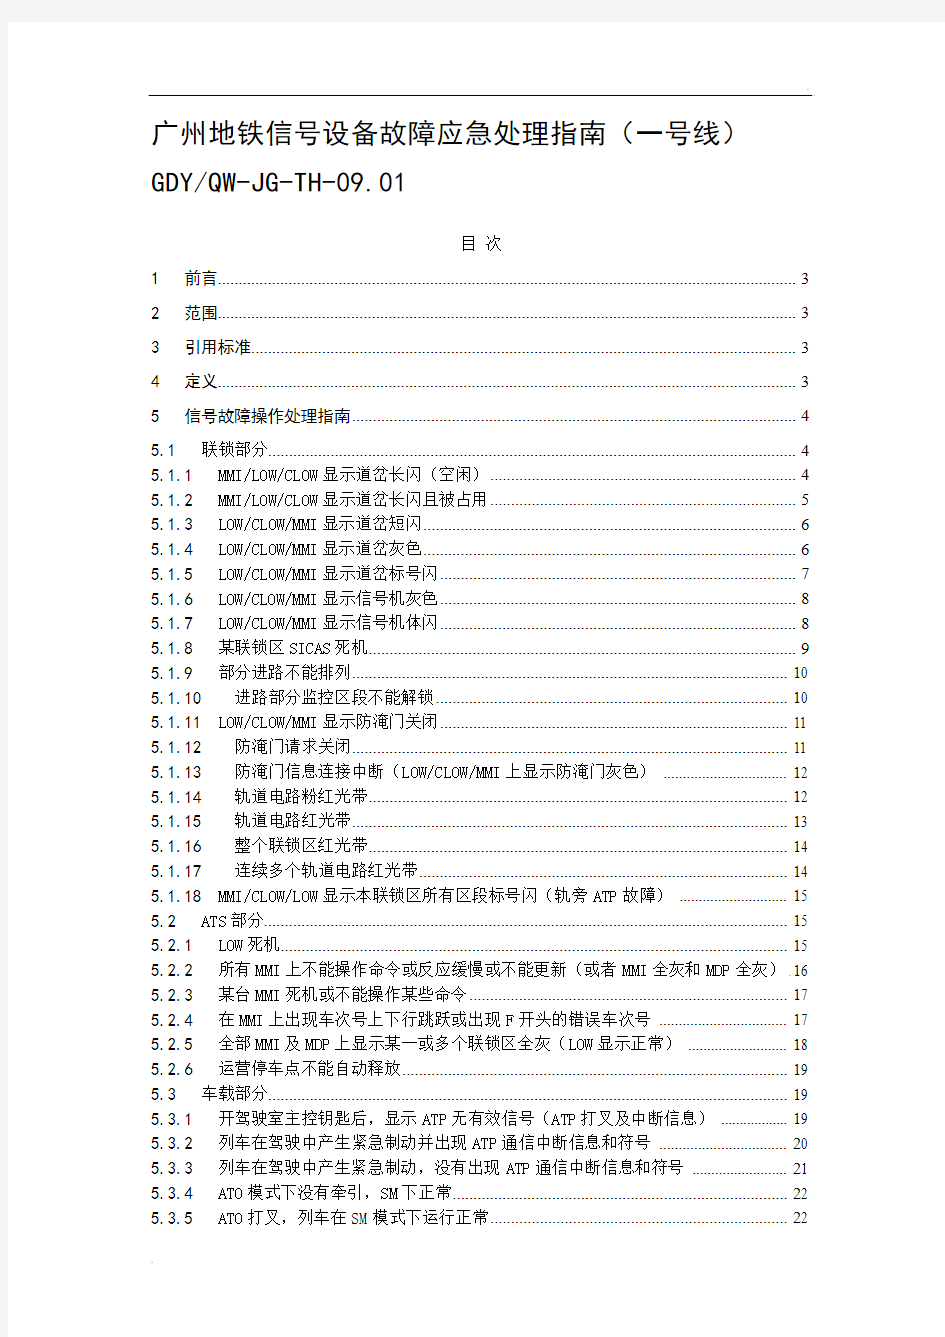 广州地铁信号设备故障应急处理指南(一号线)